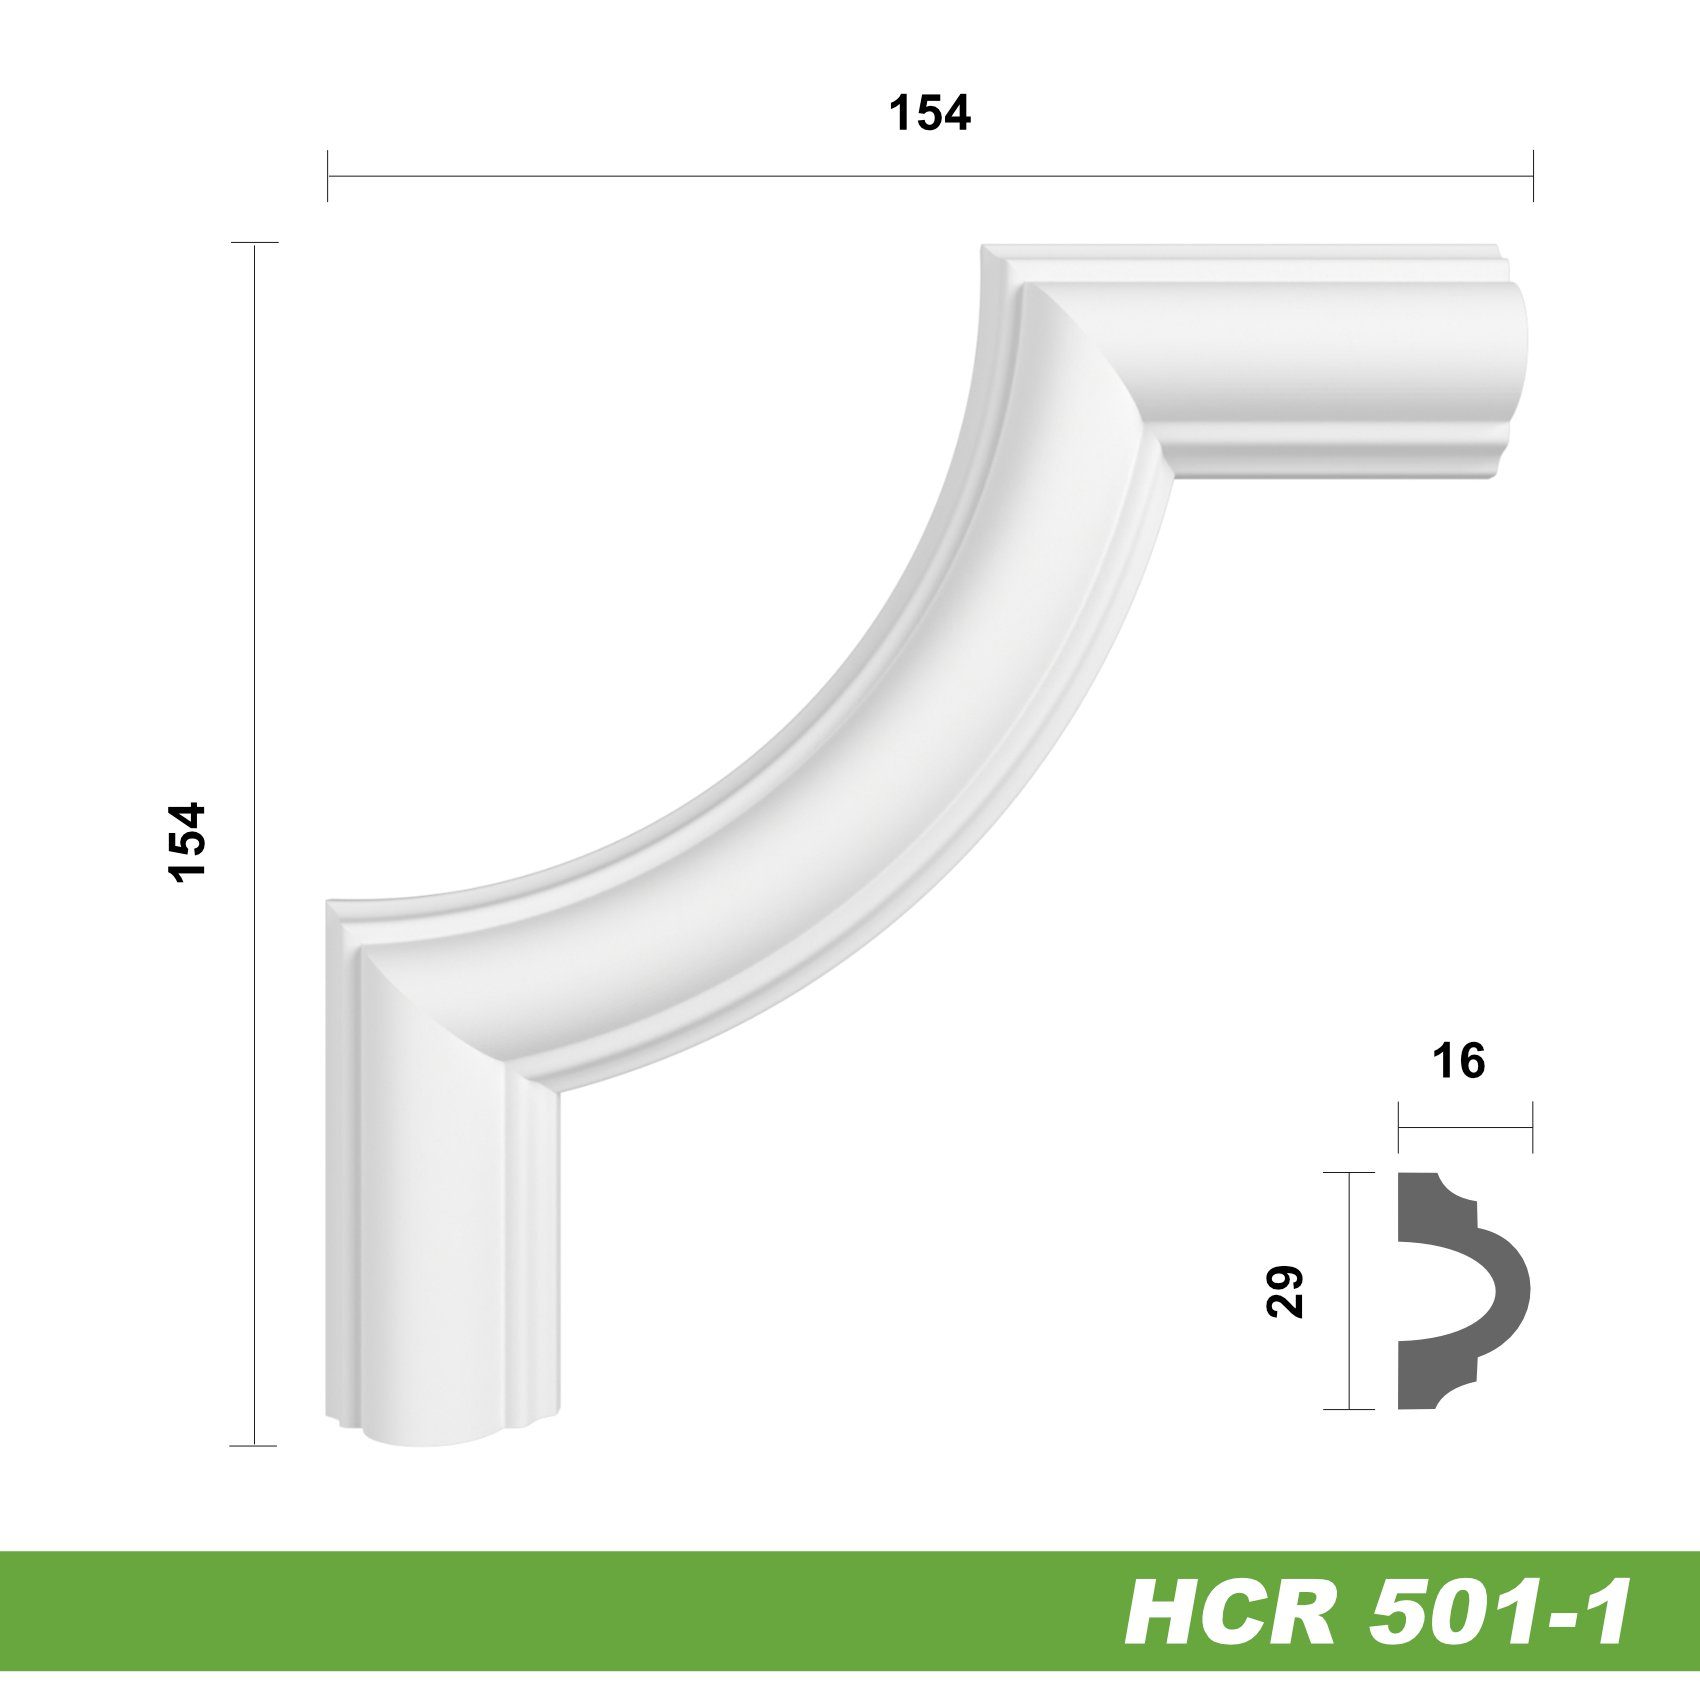 HCR501-1) Beständig & 154 schneeweiß aus extrem 154 Ecken, widerstandsfähig, HCR501-1, modern Segment mm - - Eckleiste Stuckleiste PU-Polyurethane (2 HEXIM Hexim HCR501-1 Eckstück Zierleiste Eckstück 2 Stück x